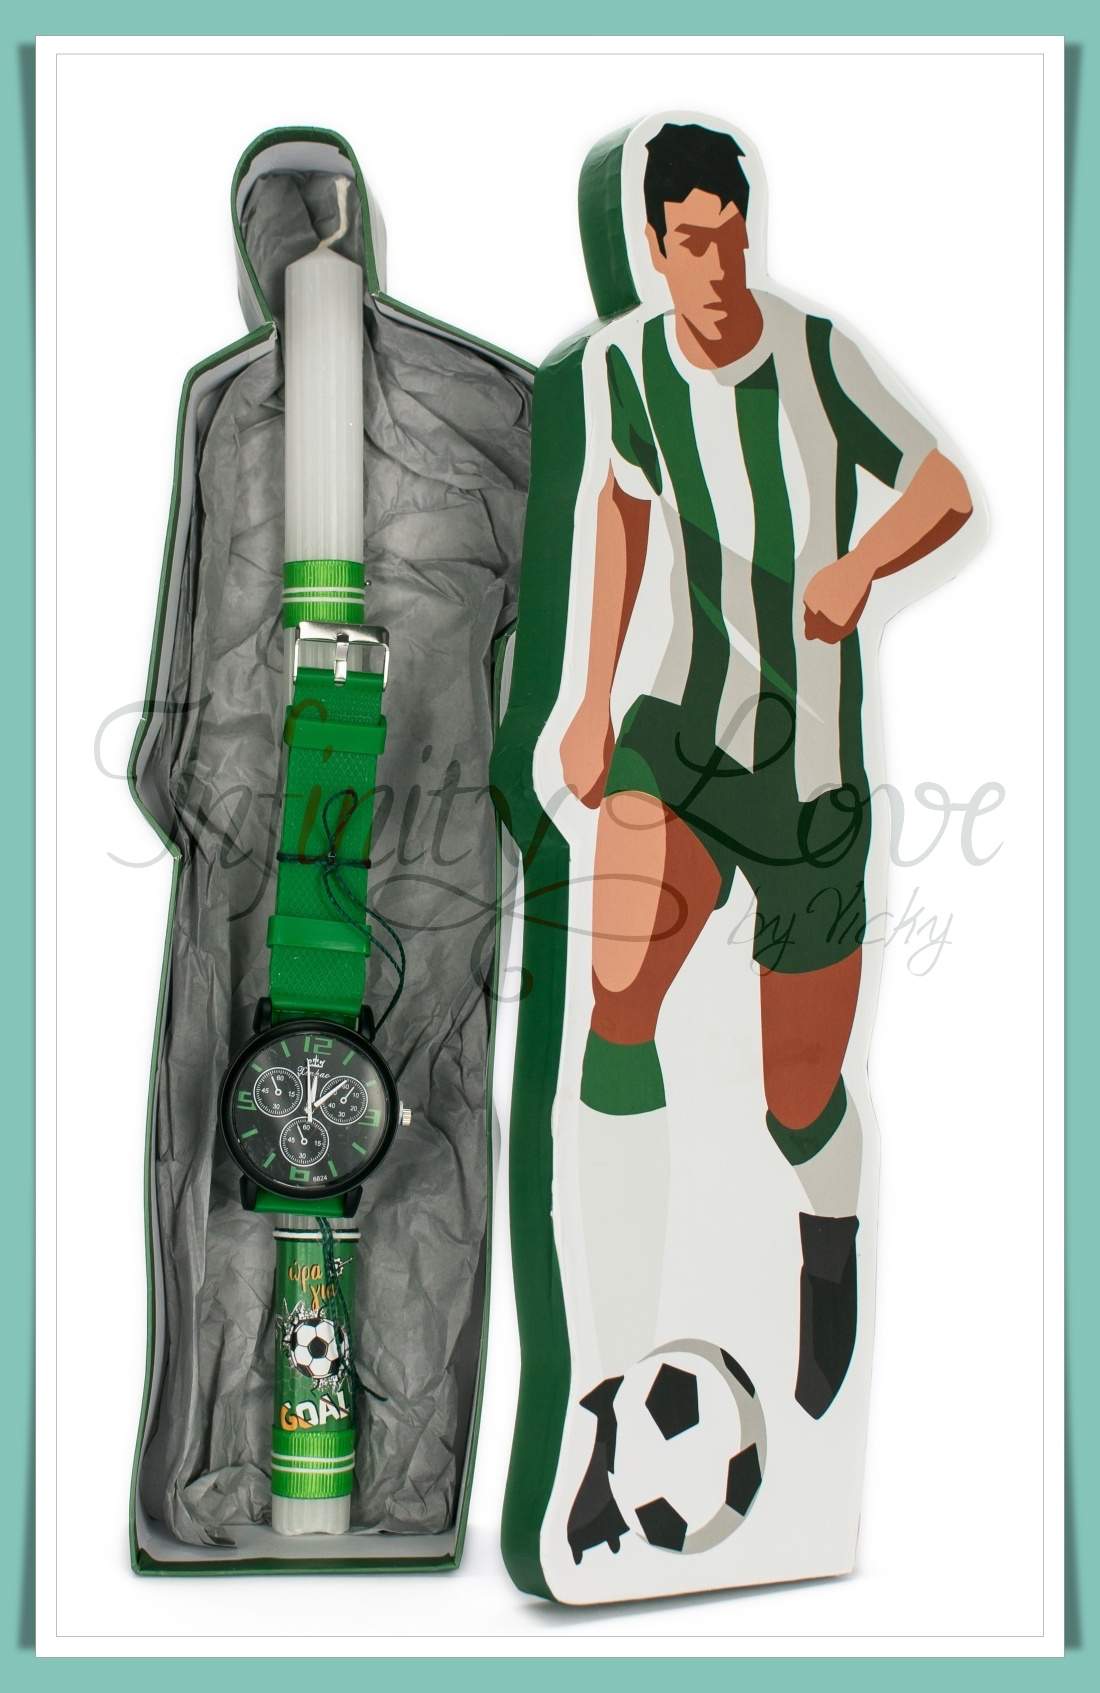 120 | Λαμπάδα με ποδοσφαιρικό ρολόι πράσινο